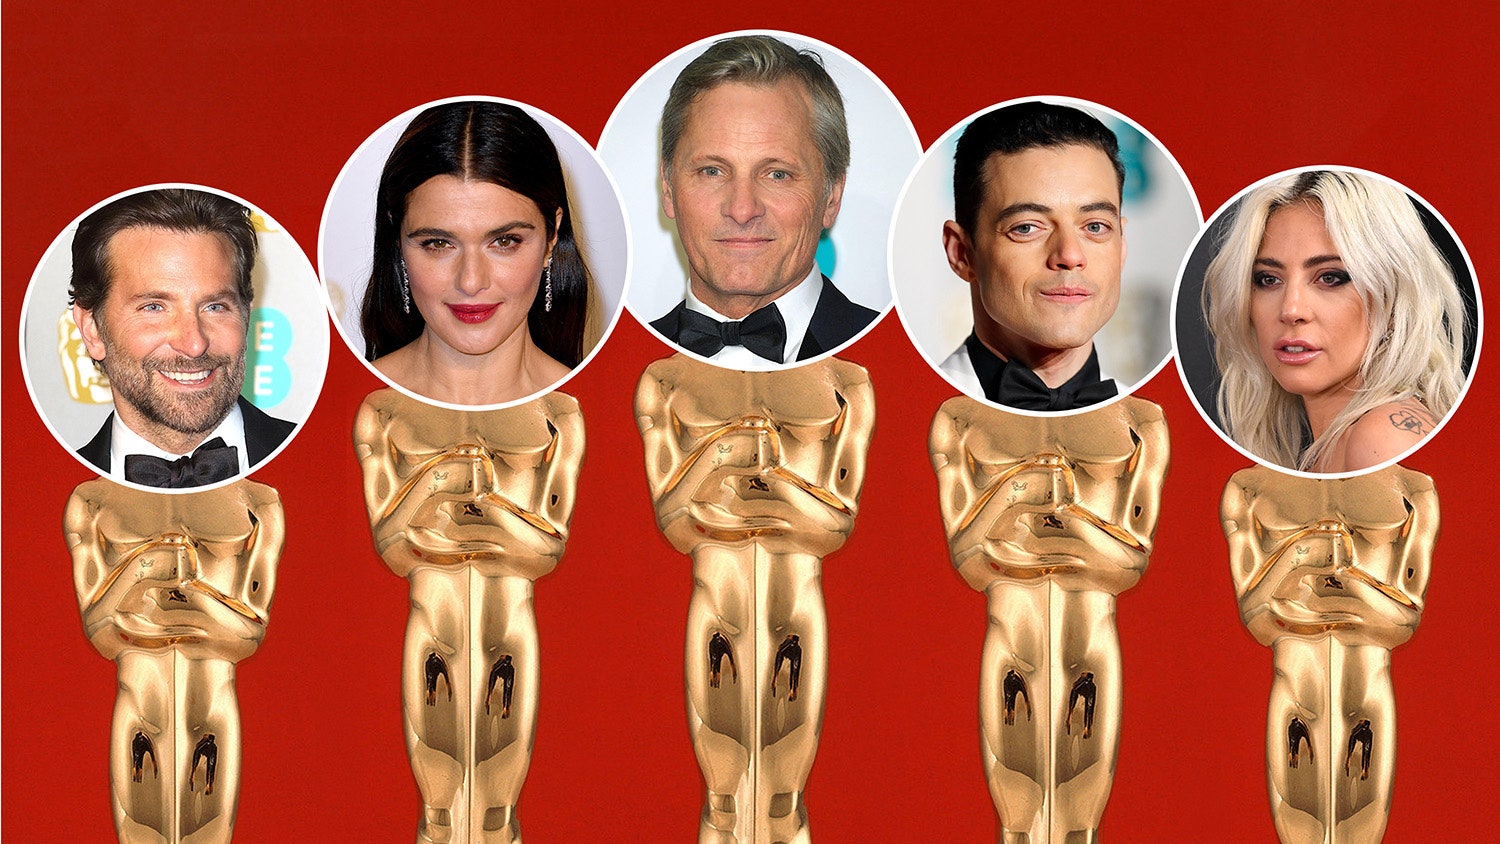 «Оскар» 2019 победители предстоящей церемонии согласно прогнозу звездного нумеролога